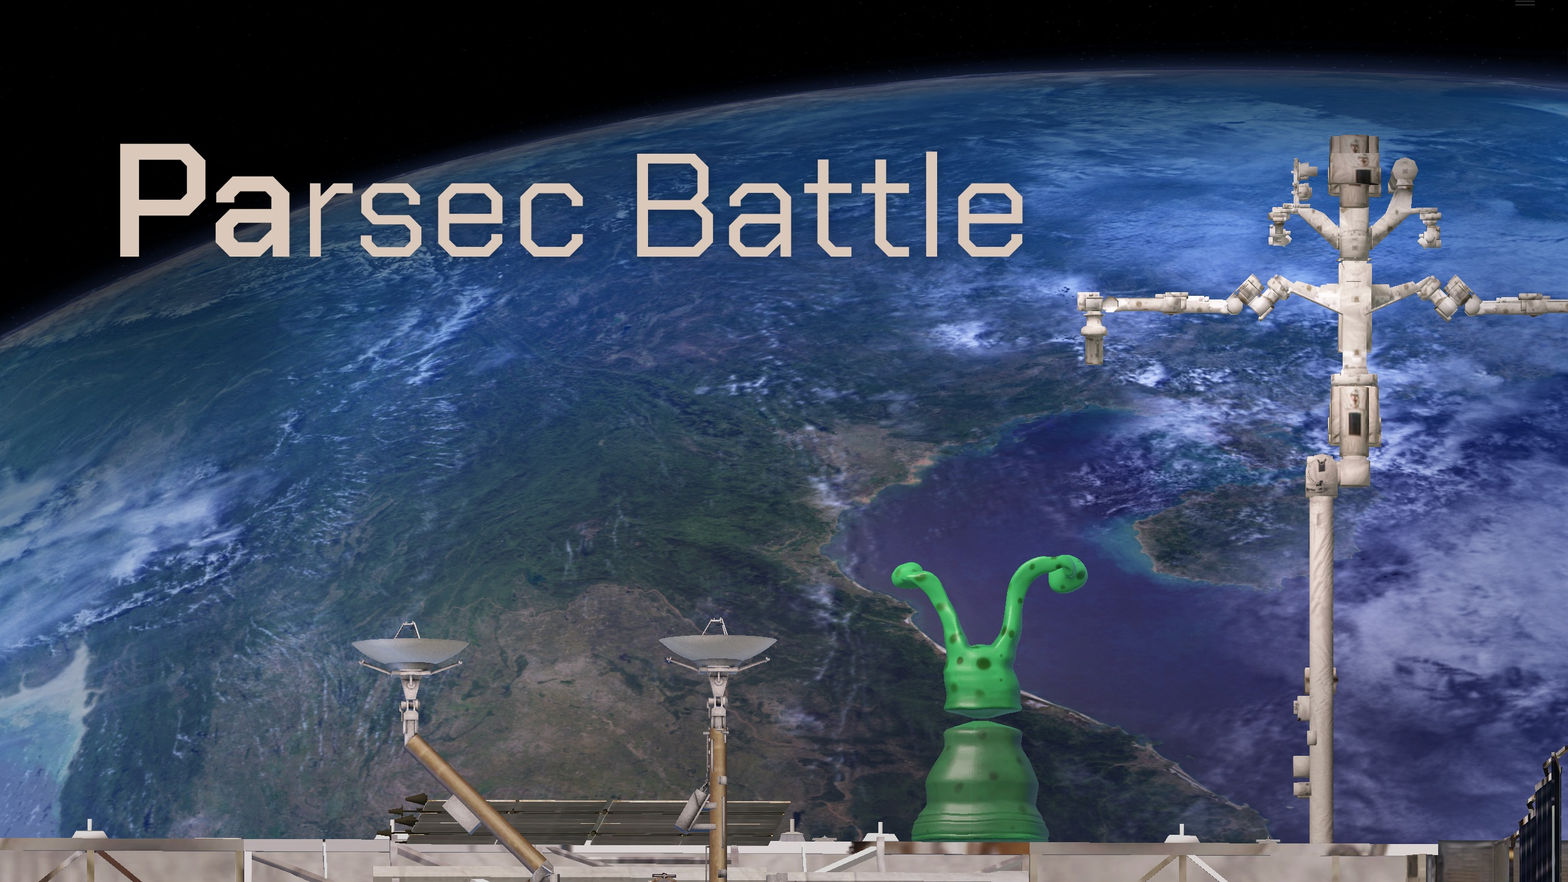 Parsec Battle